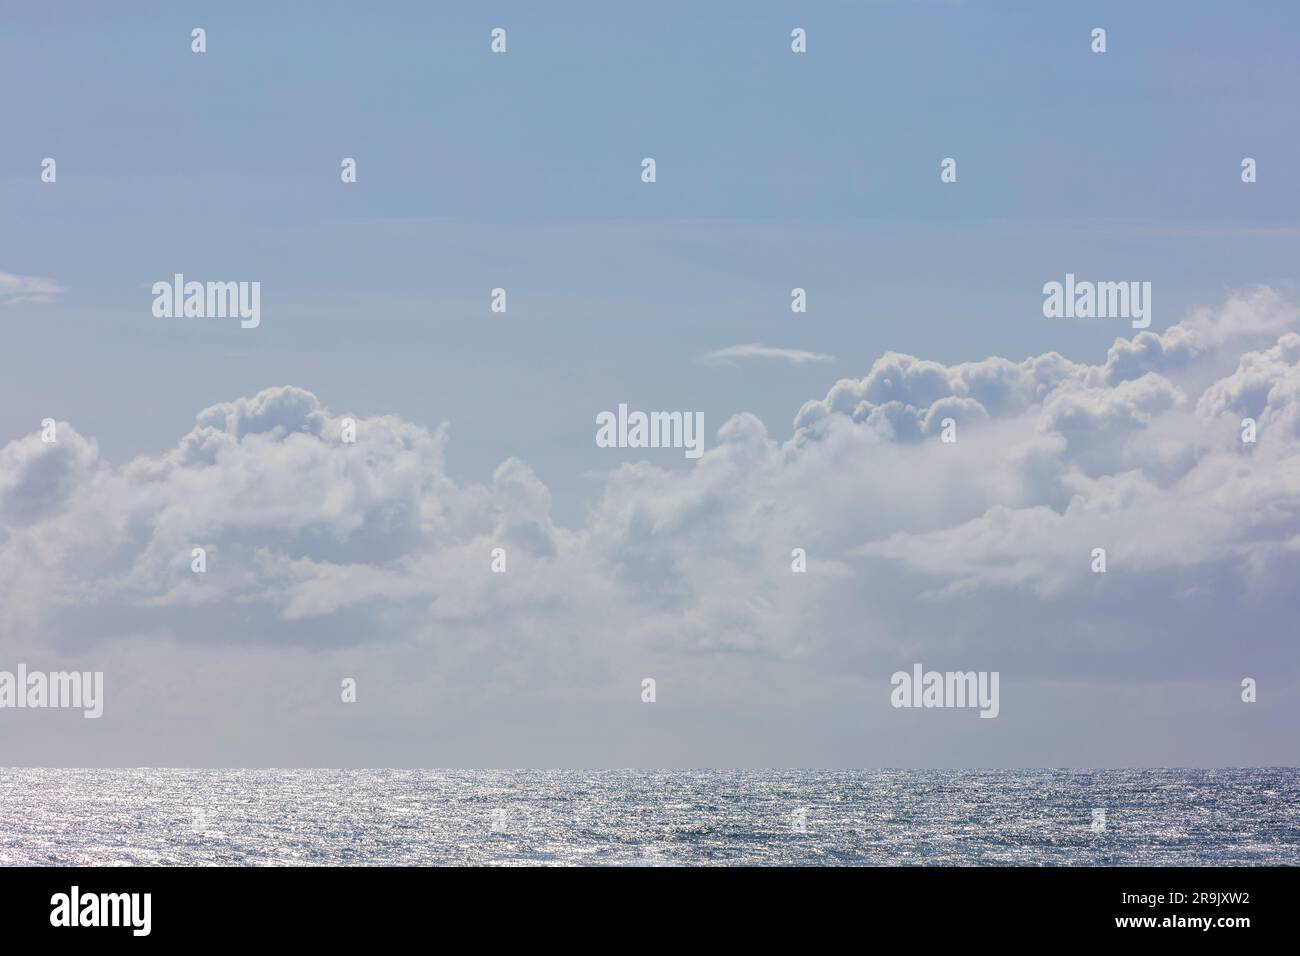 Nuages blancs dans un ciel bleu au-dessus de l'océan Pacifique. Banque D'Images